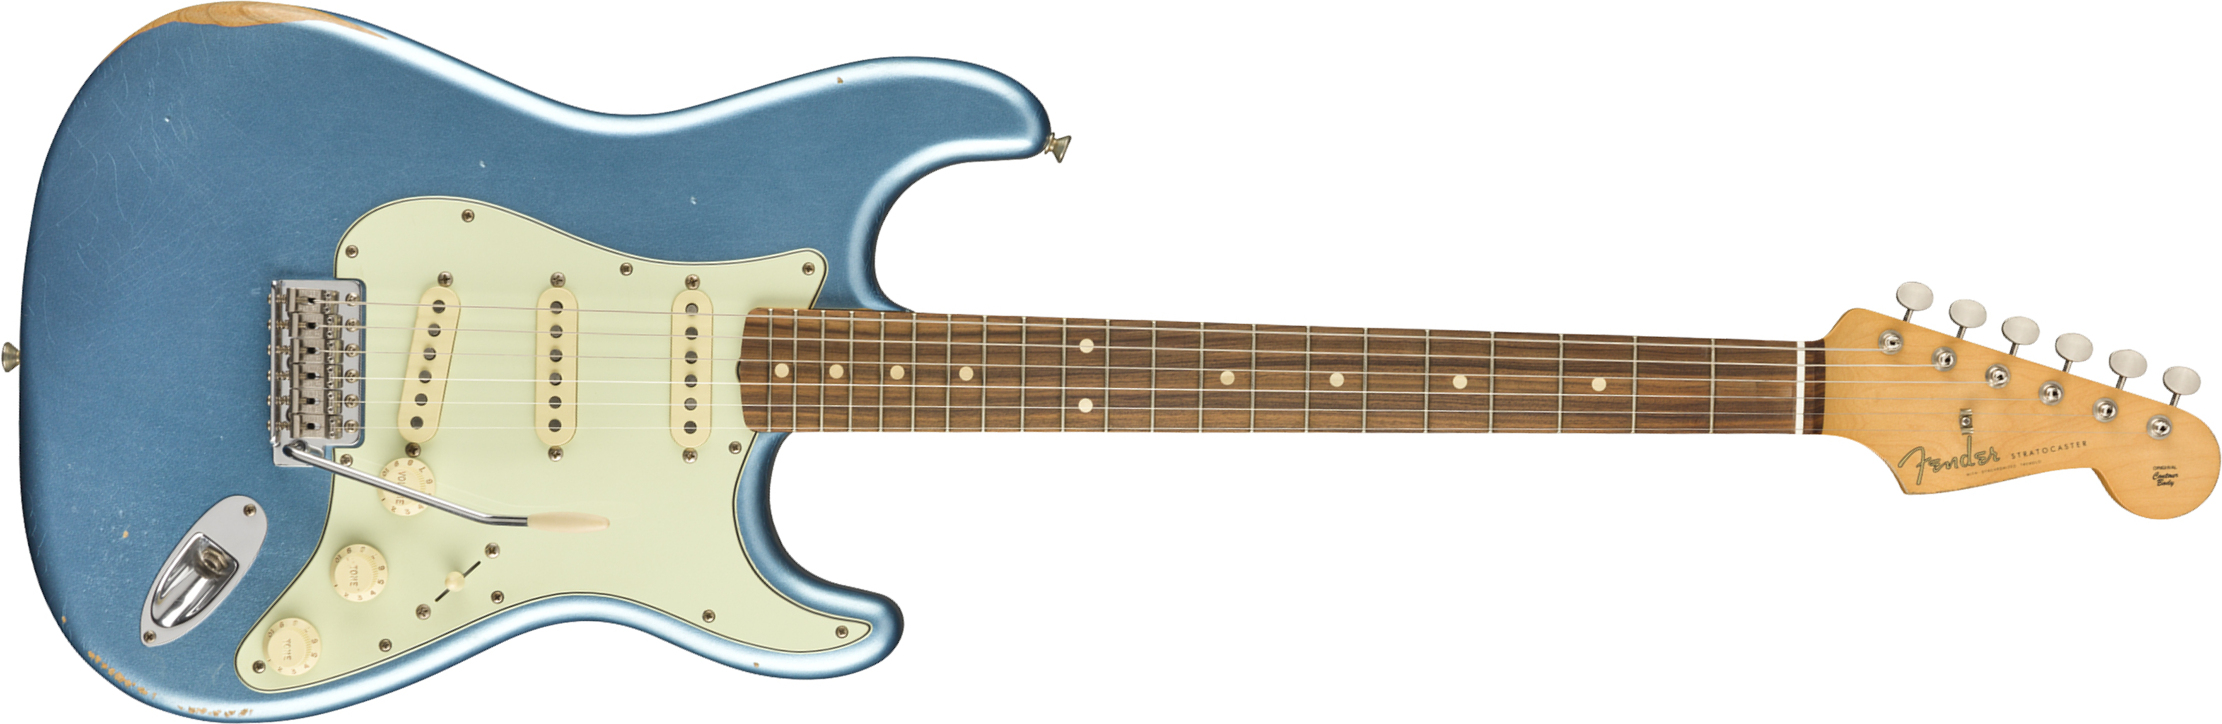 Fender Strat 60s Road Worn Mex Pf - Lake Placid Blue - Guitare Électrique Forme Str - Main picture